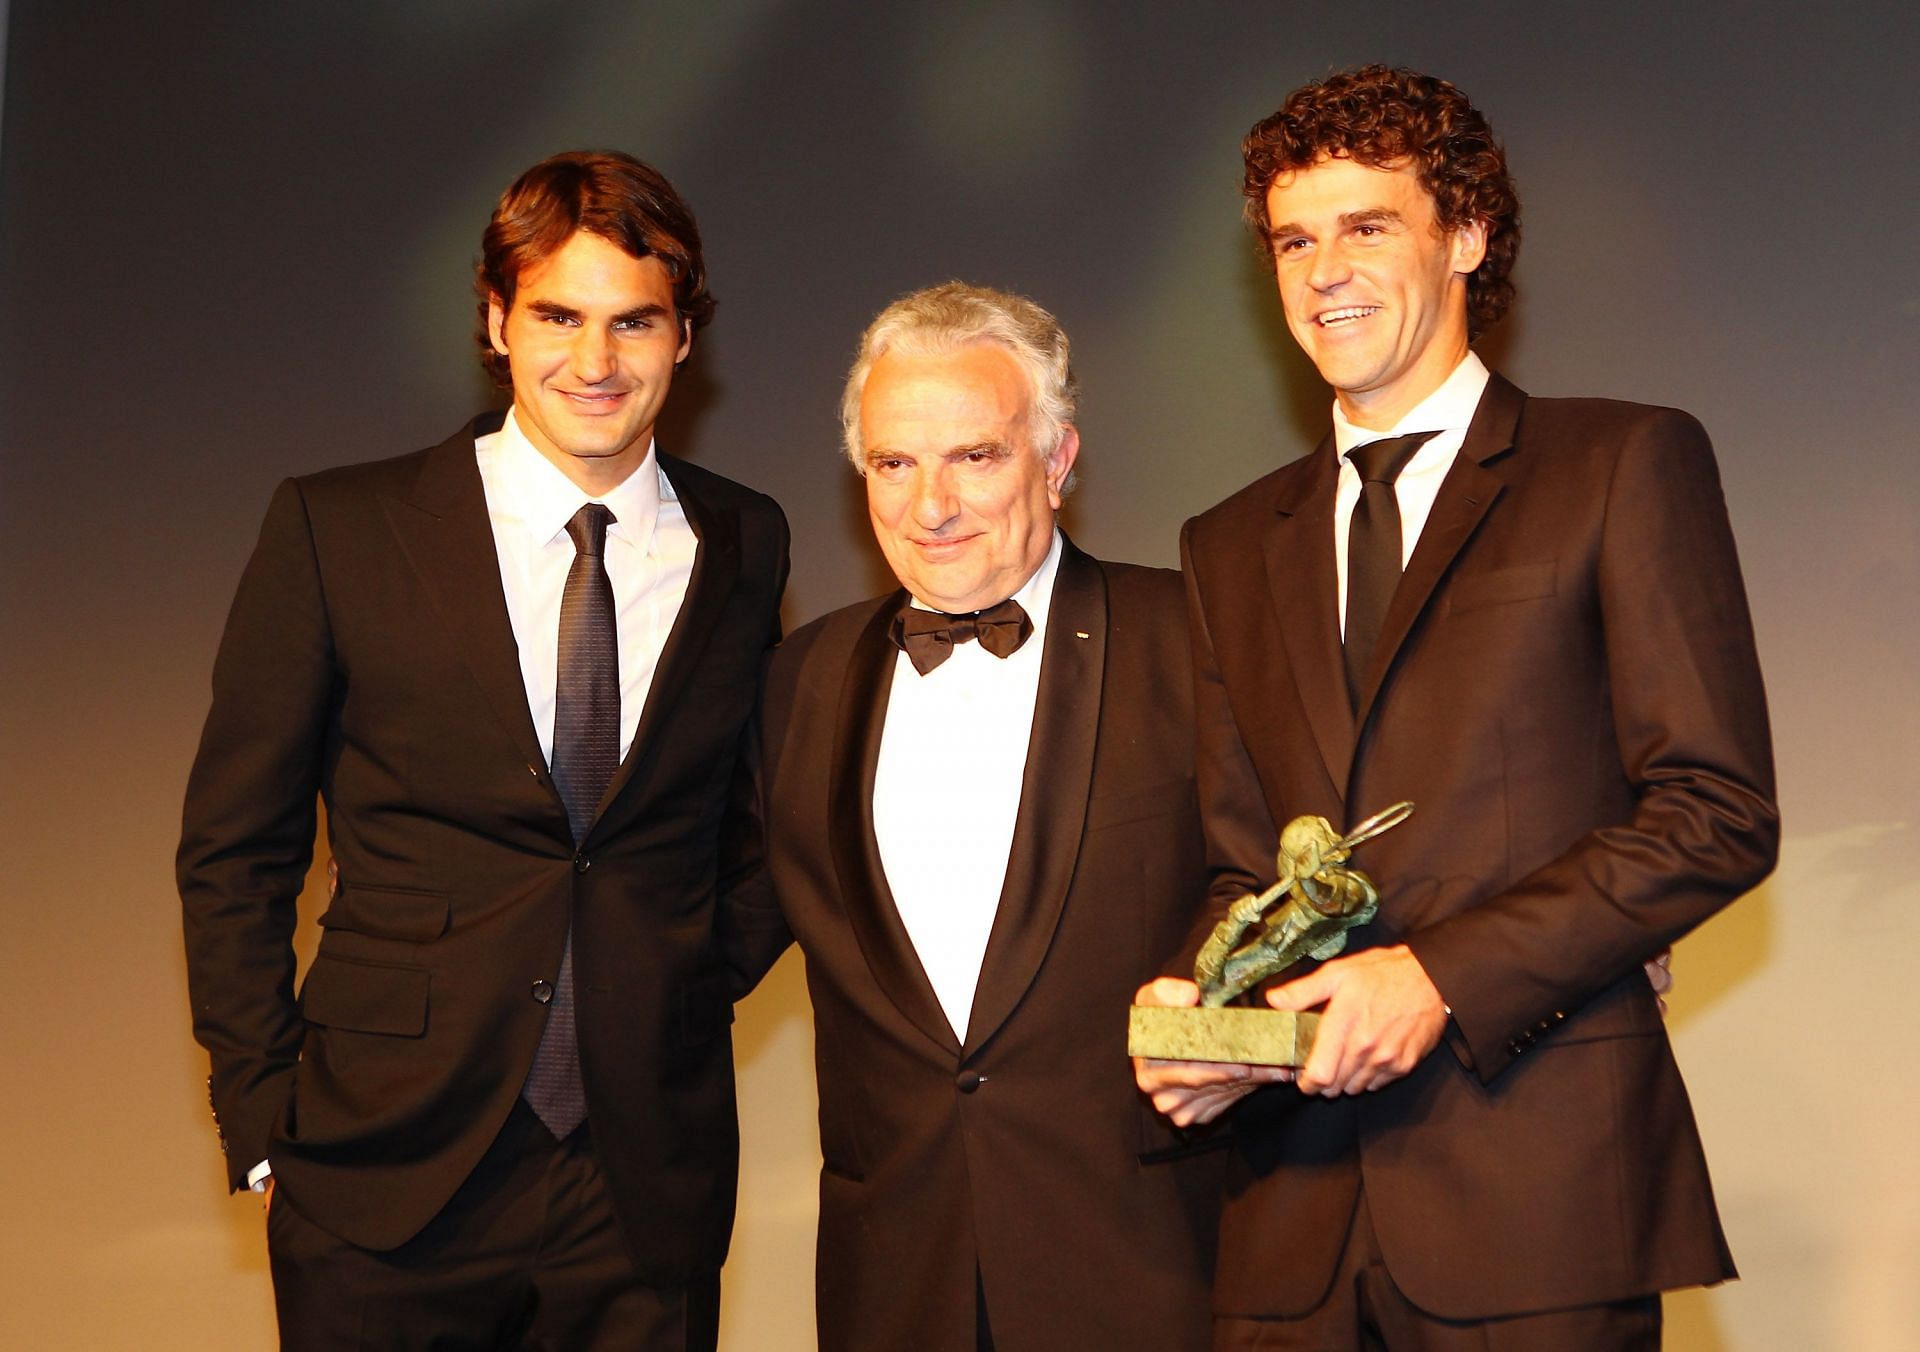 2010 French Open - ITF World Champions Gala